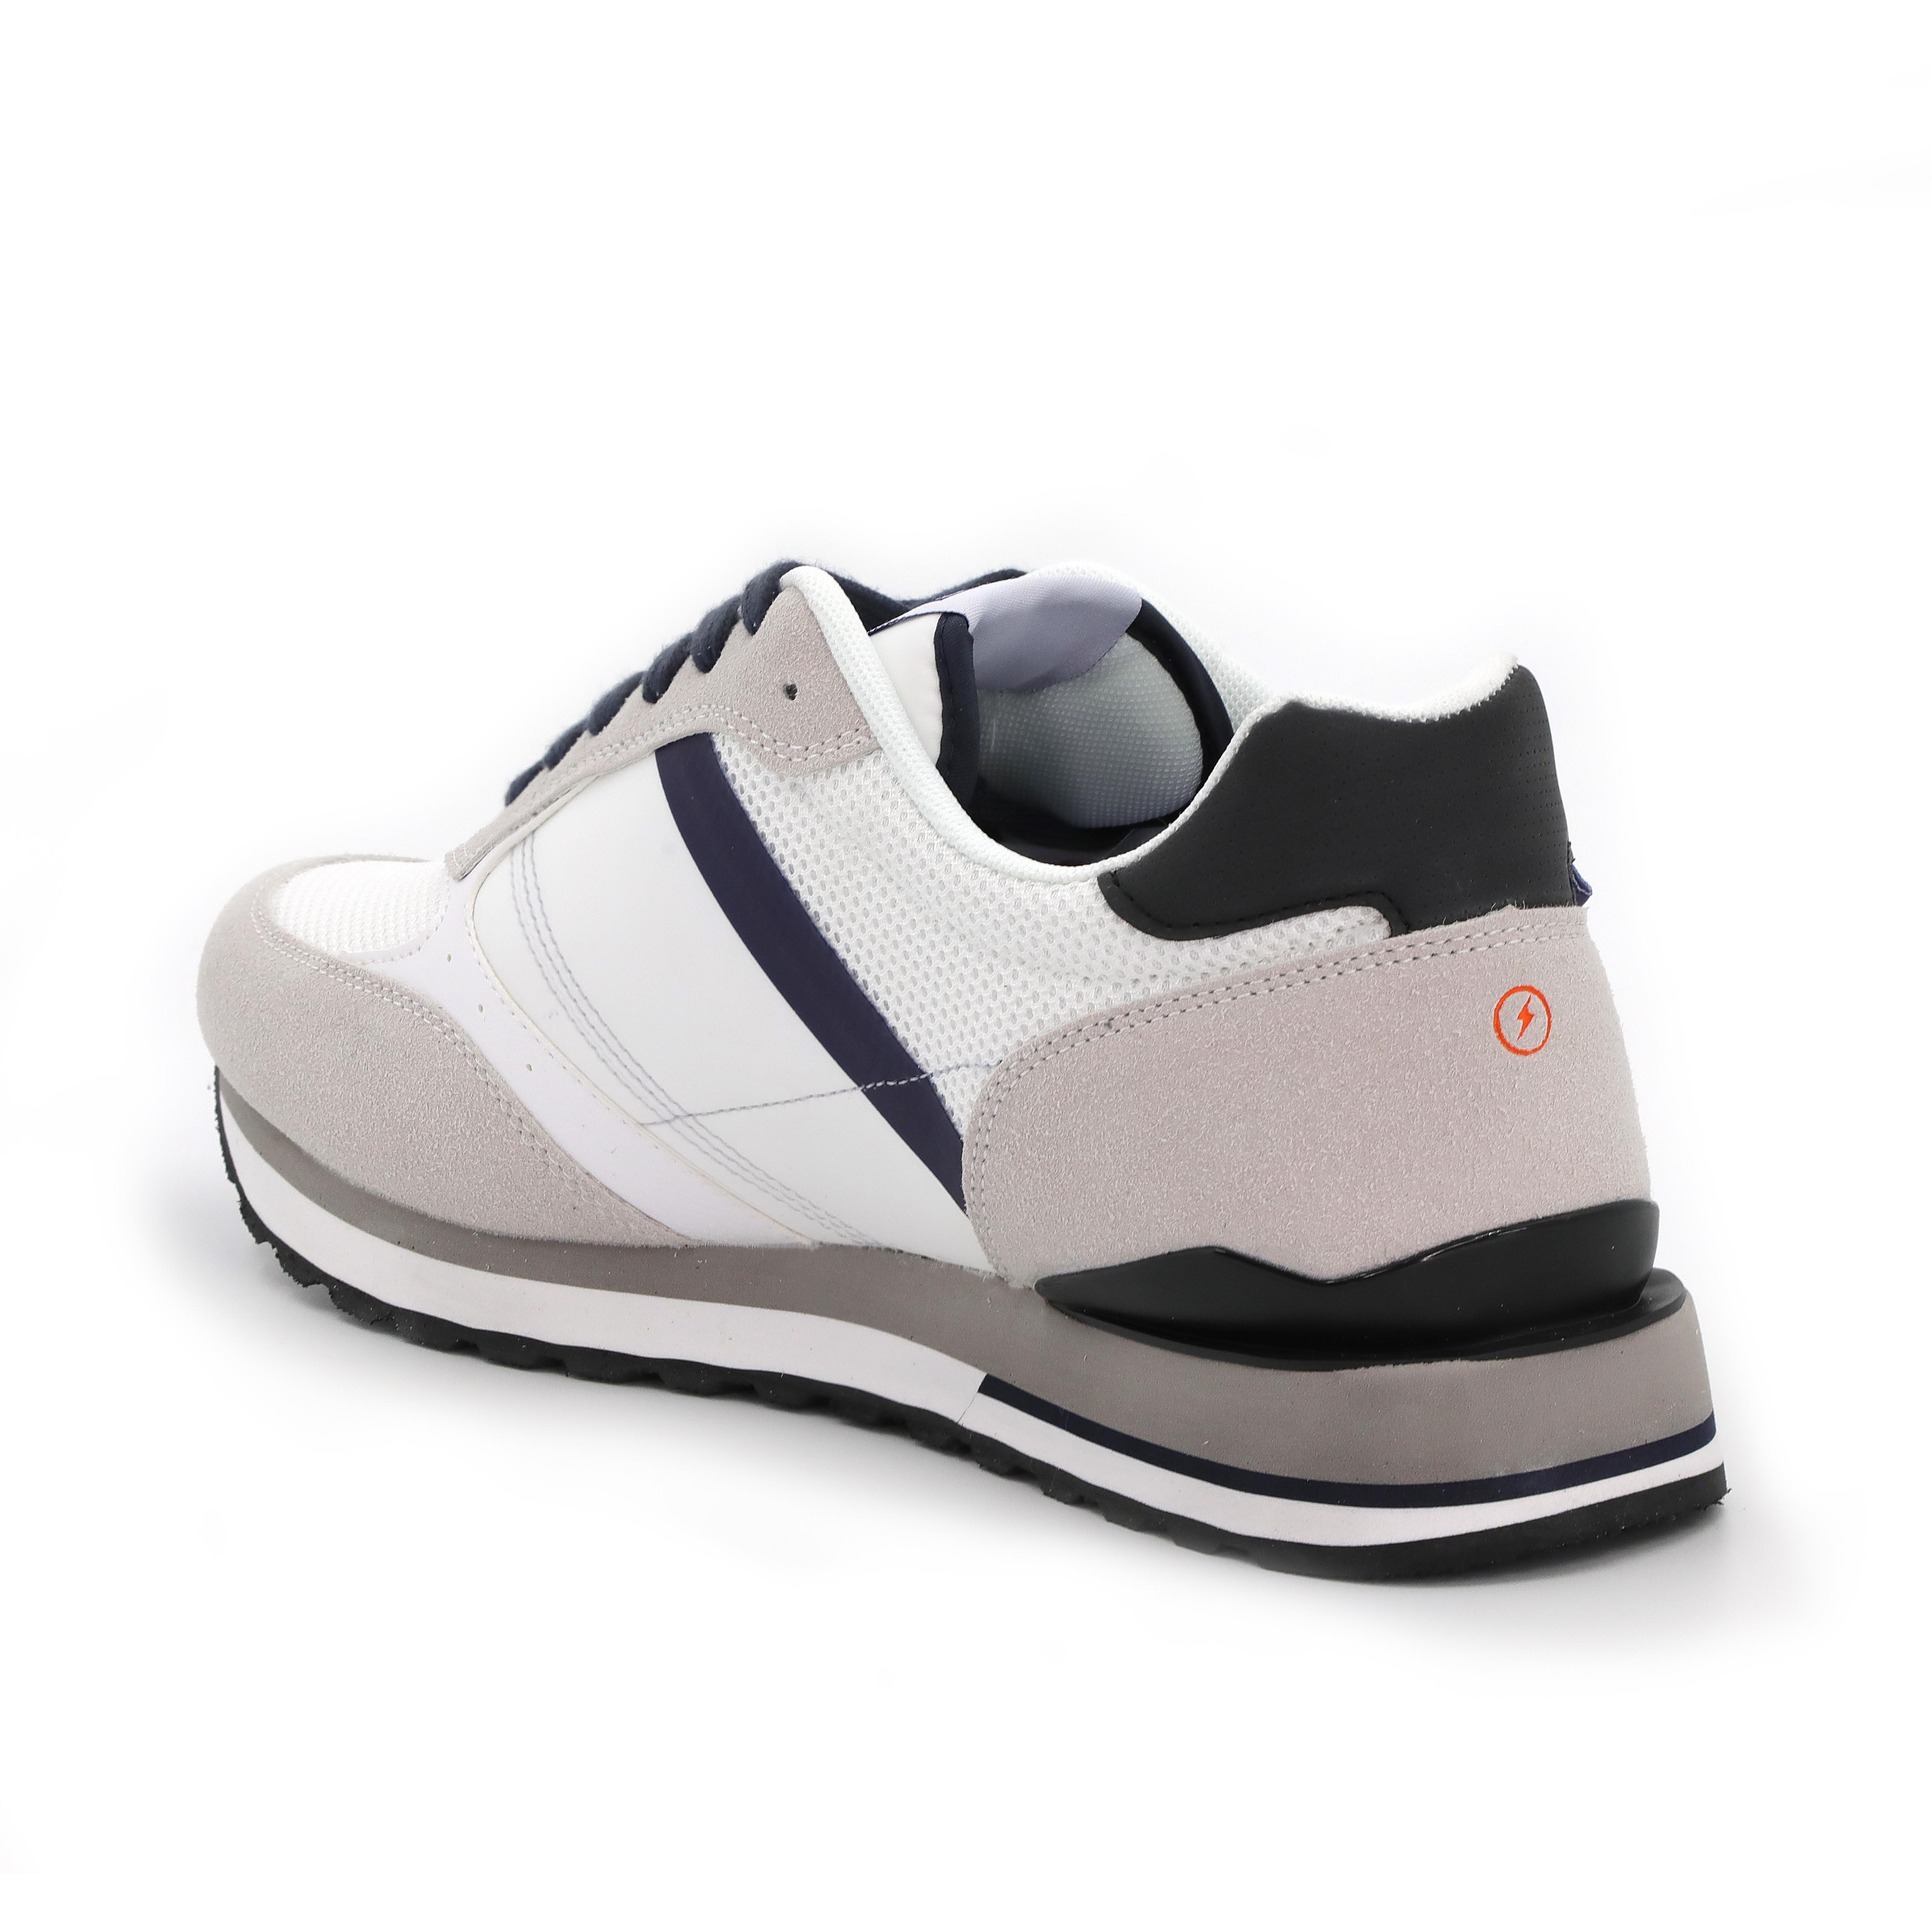 Мужские кроссовки GAS, белые, цвет белый, размер 46 - фото 3